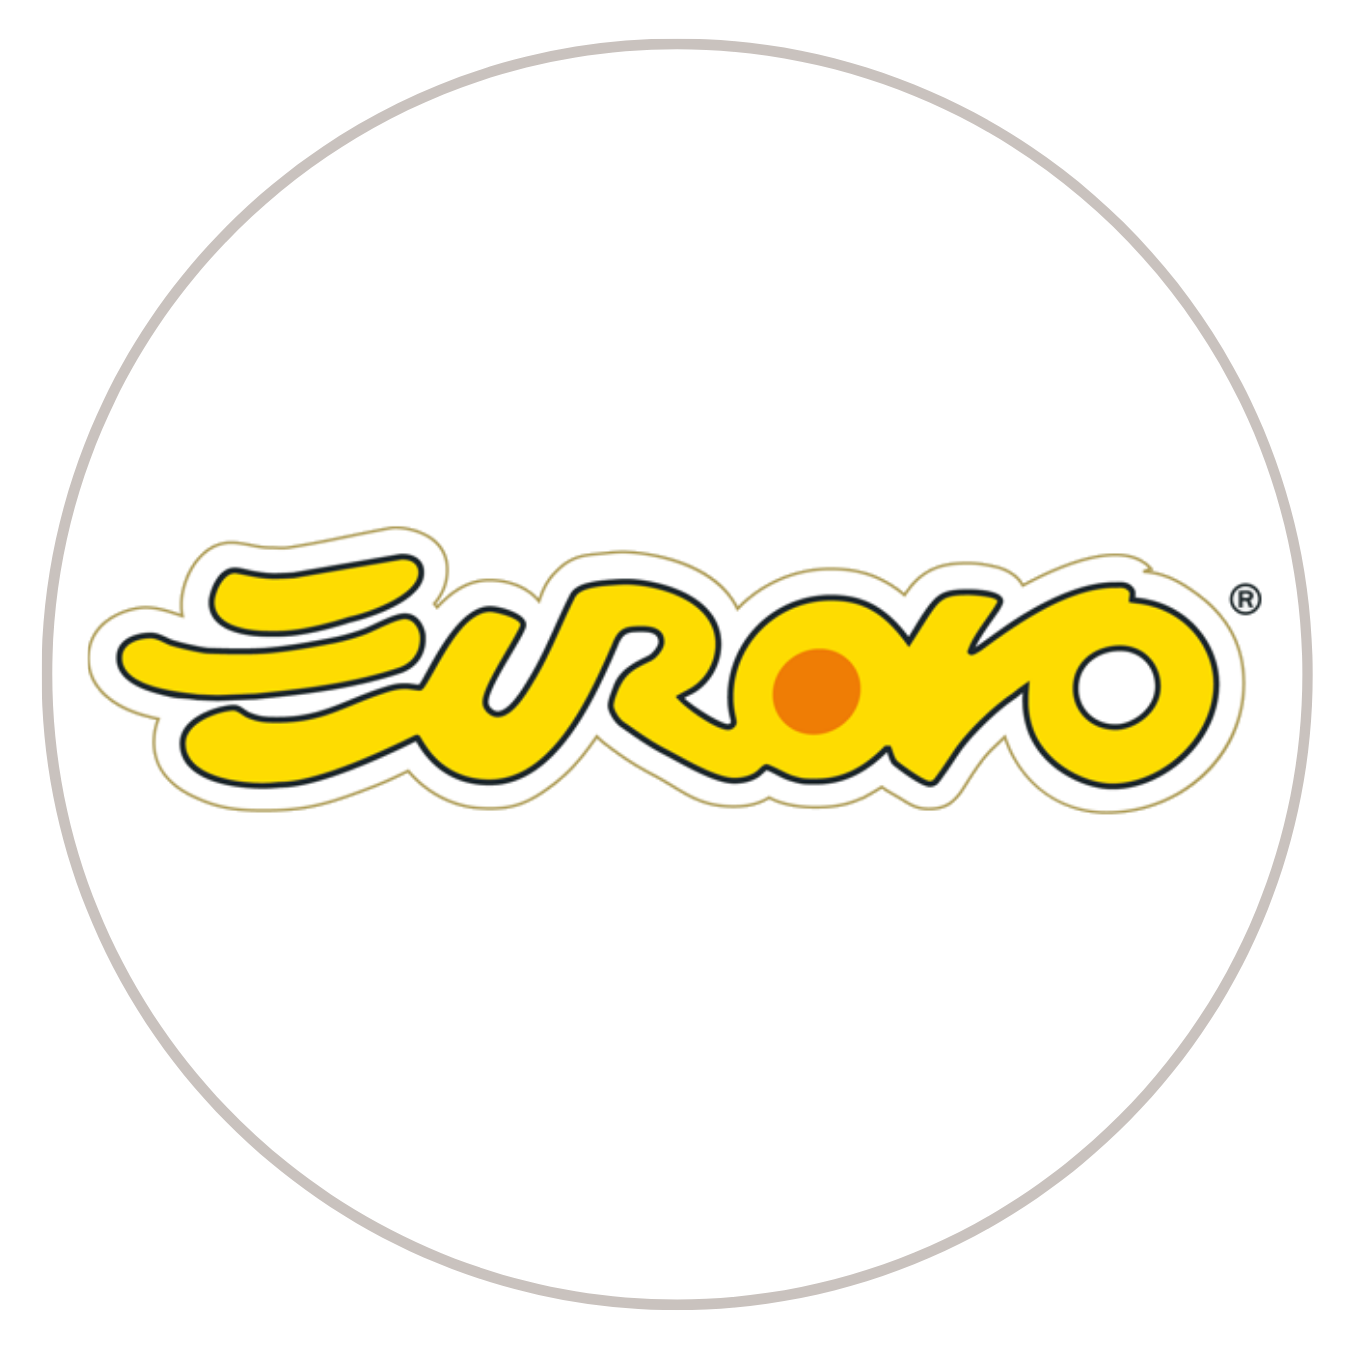 Eurovo